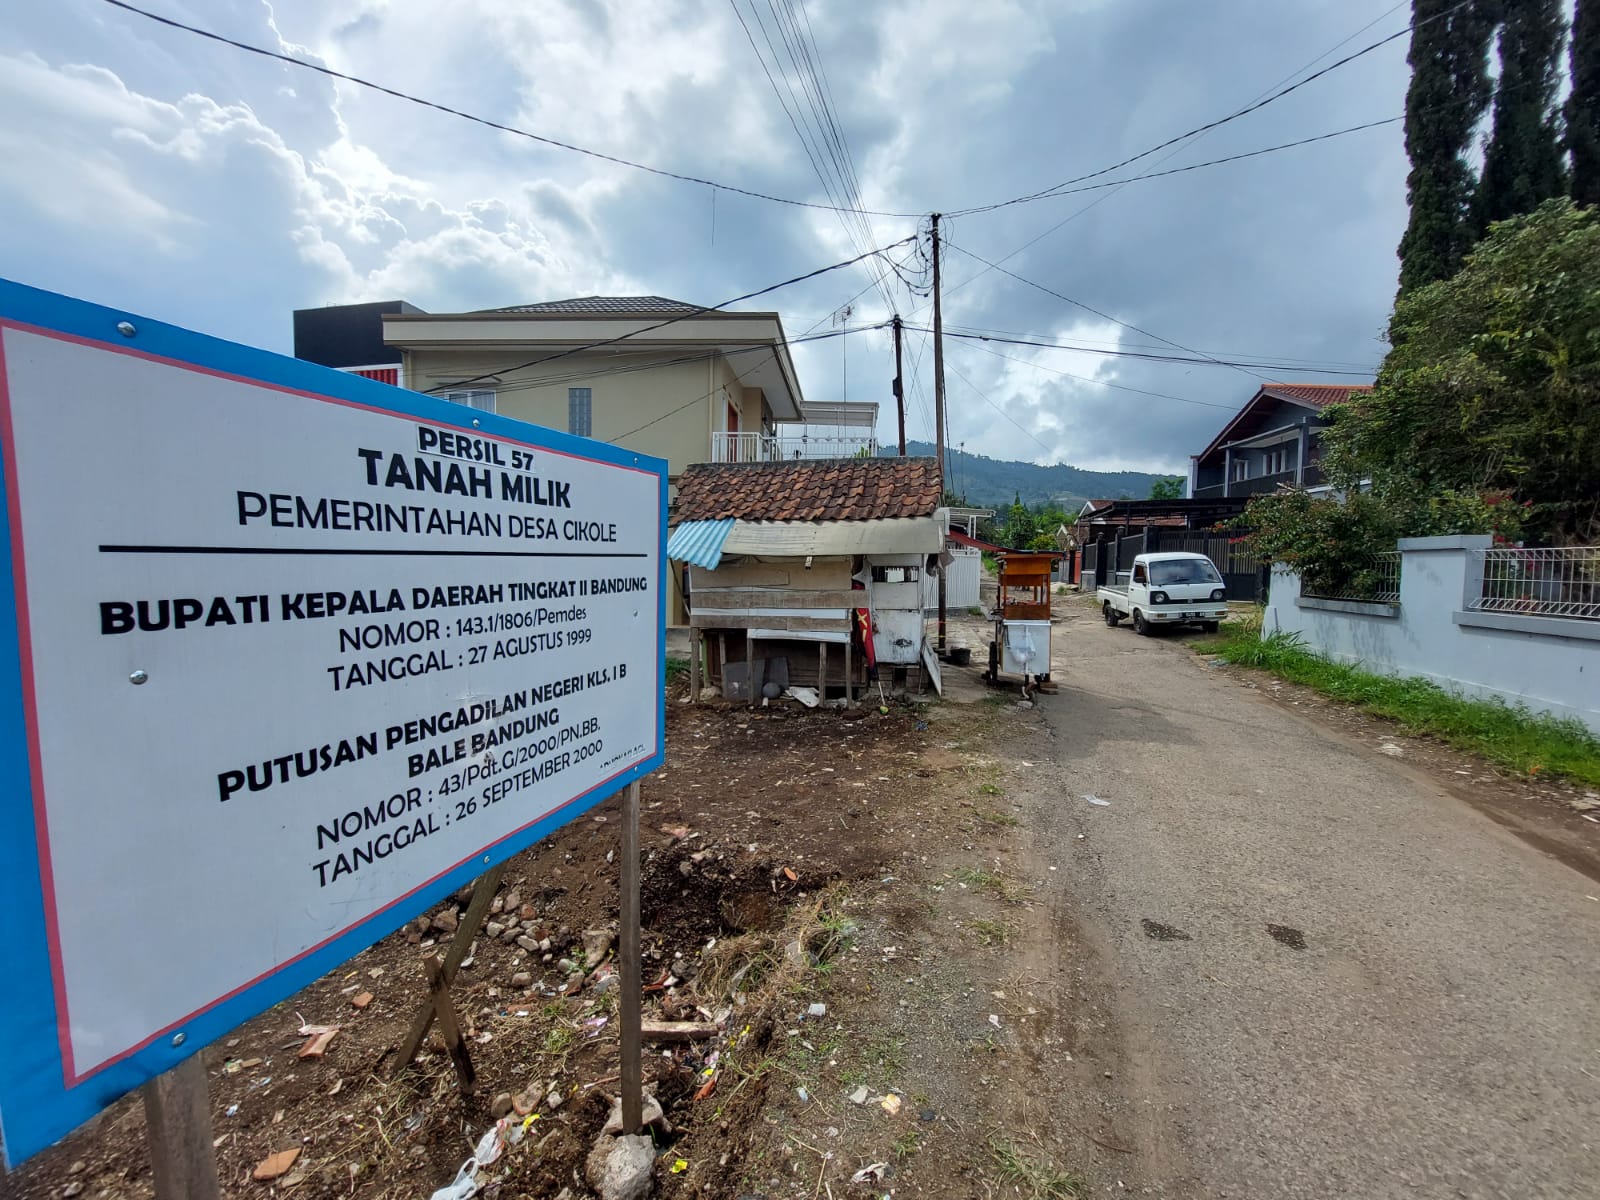 Aset Desa Cikole yang sempat dijual oknum Kades dipasang papan nama sebagai bentuk klaim kepemilikan ke pemerintah daerah